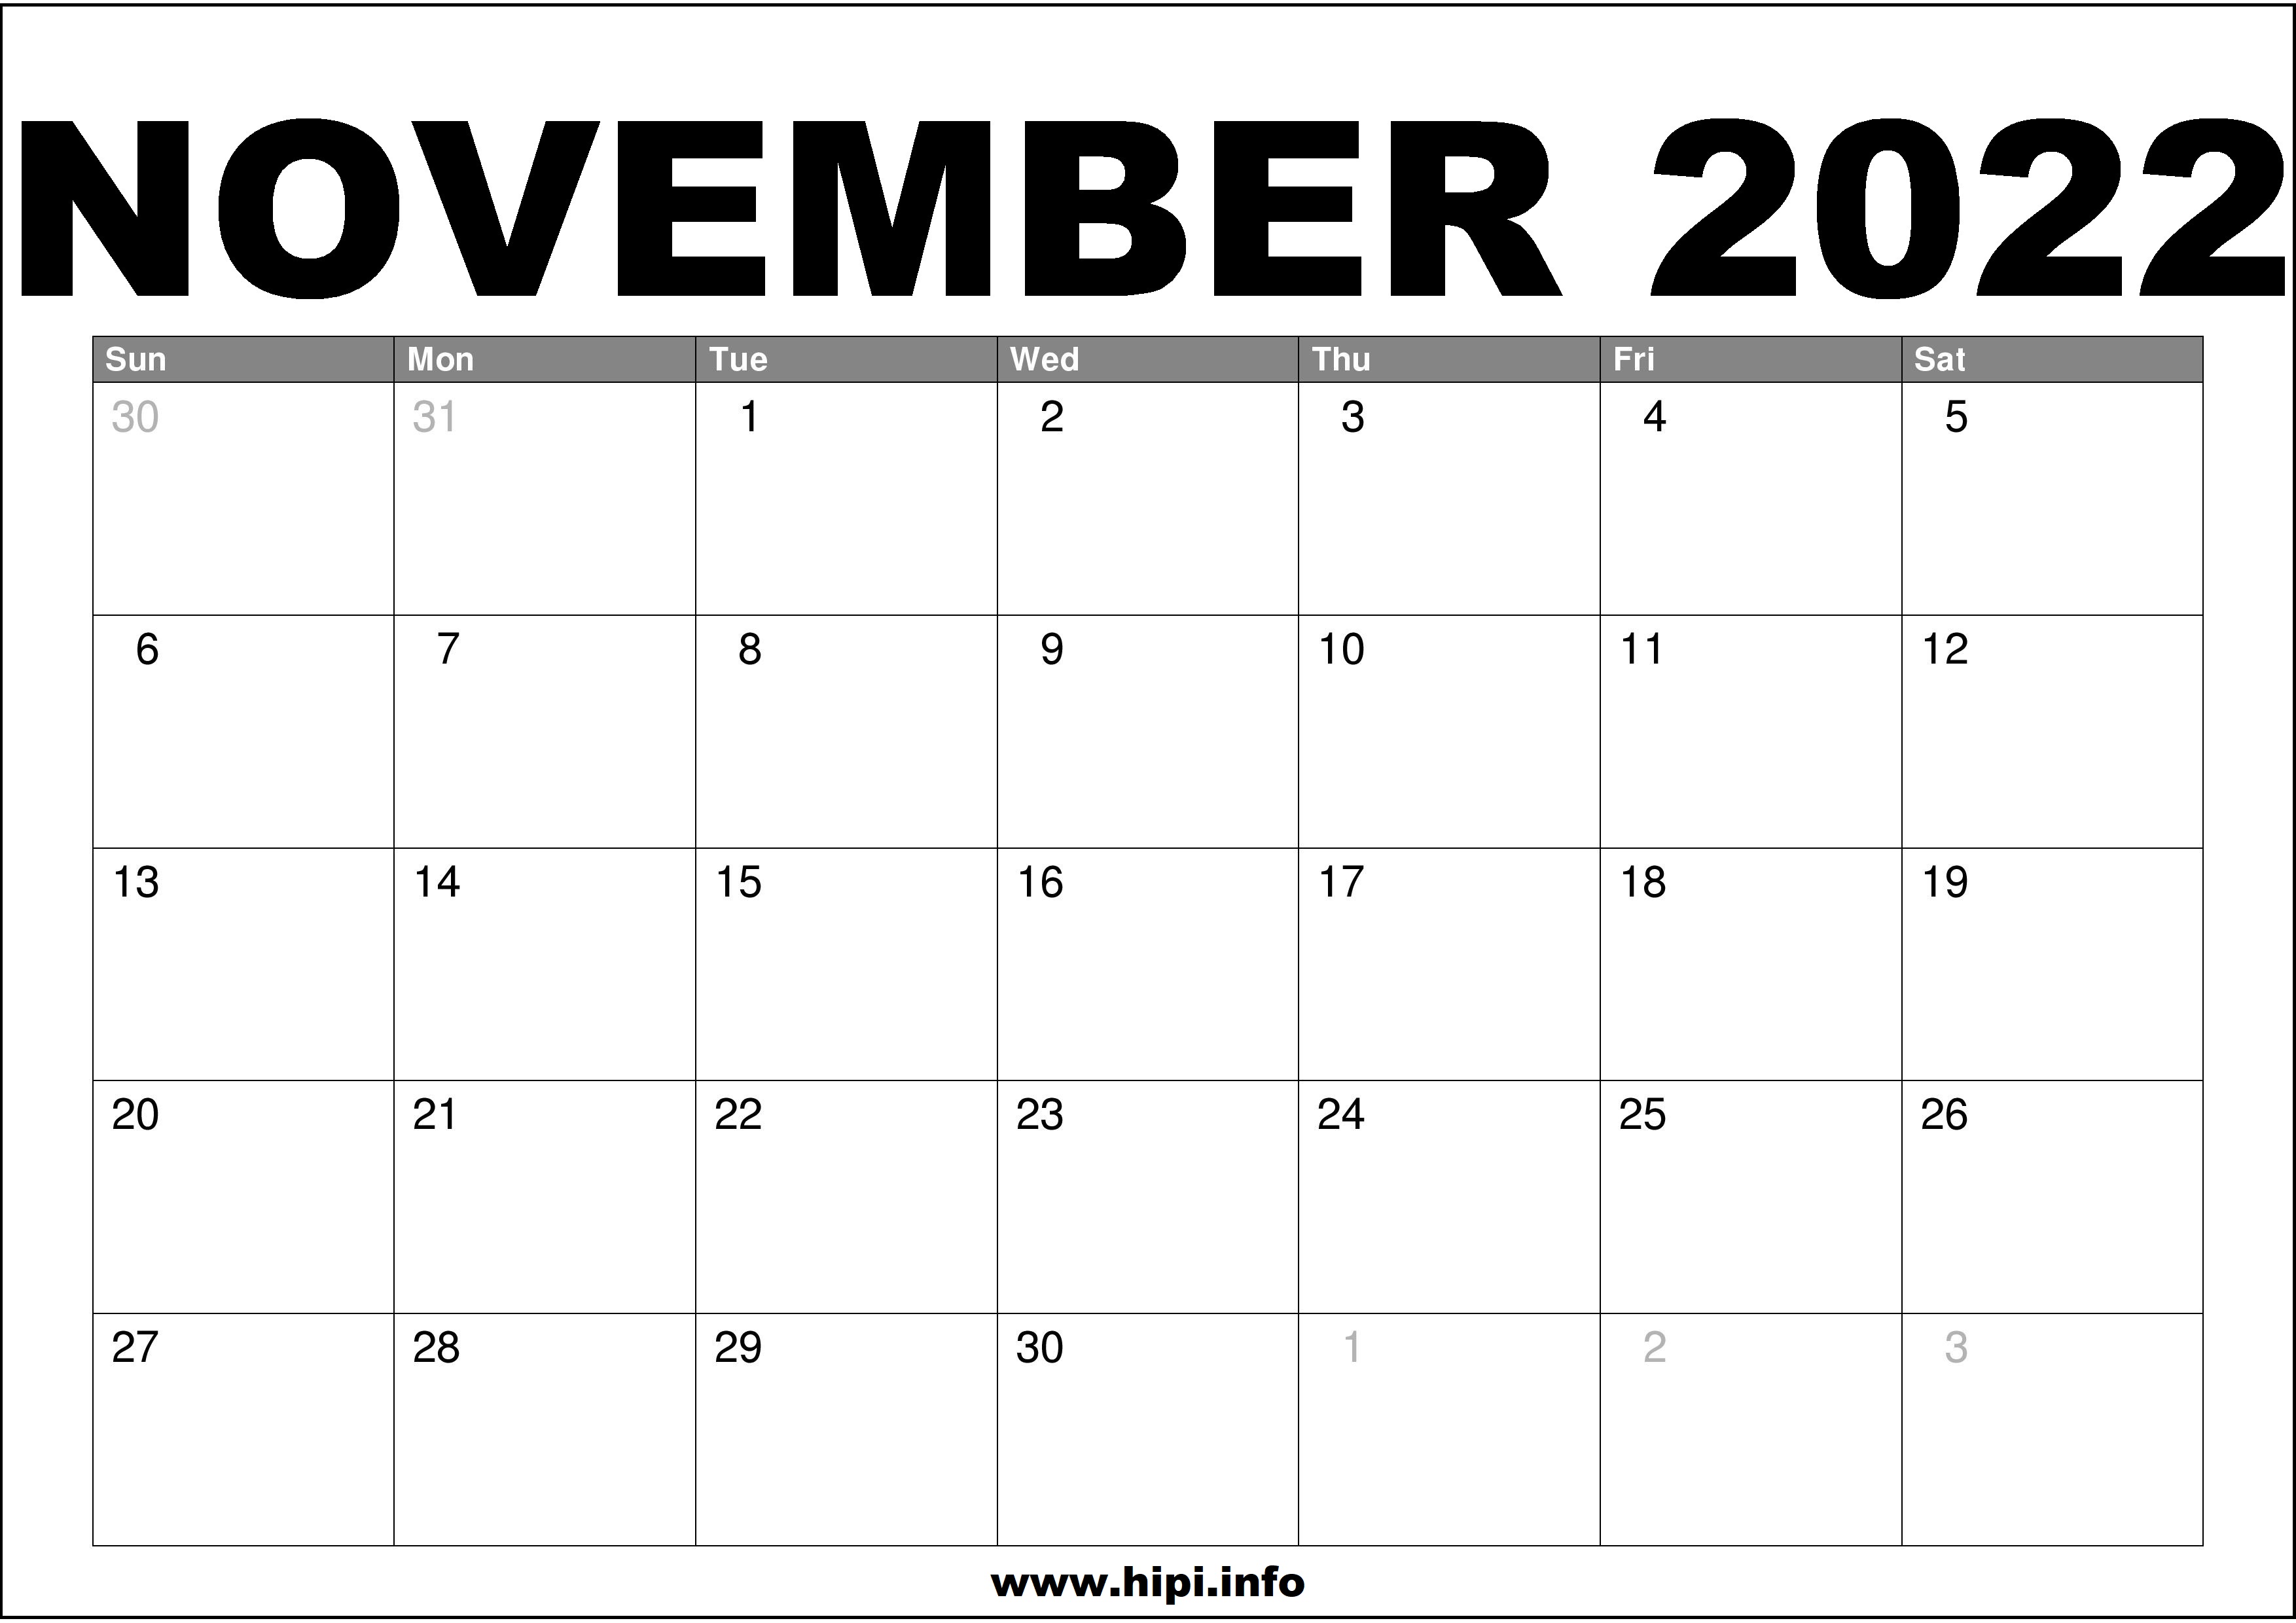 Printable 2022 November Calendar November 2022 Calendar Printable Free - Hipi.info | Calendars Printable Free